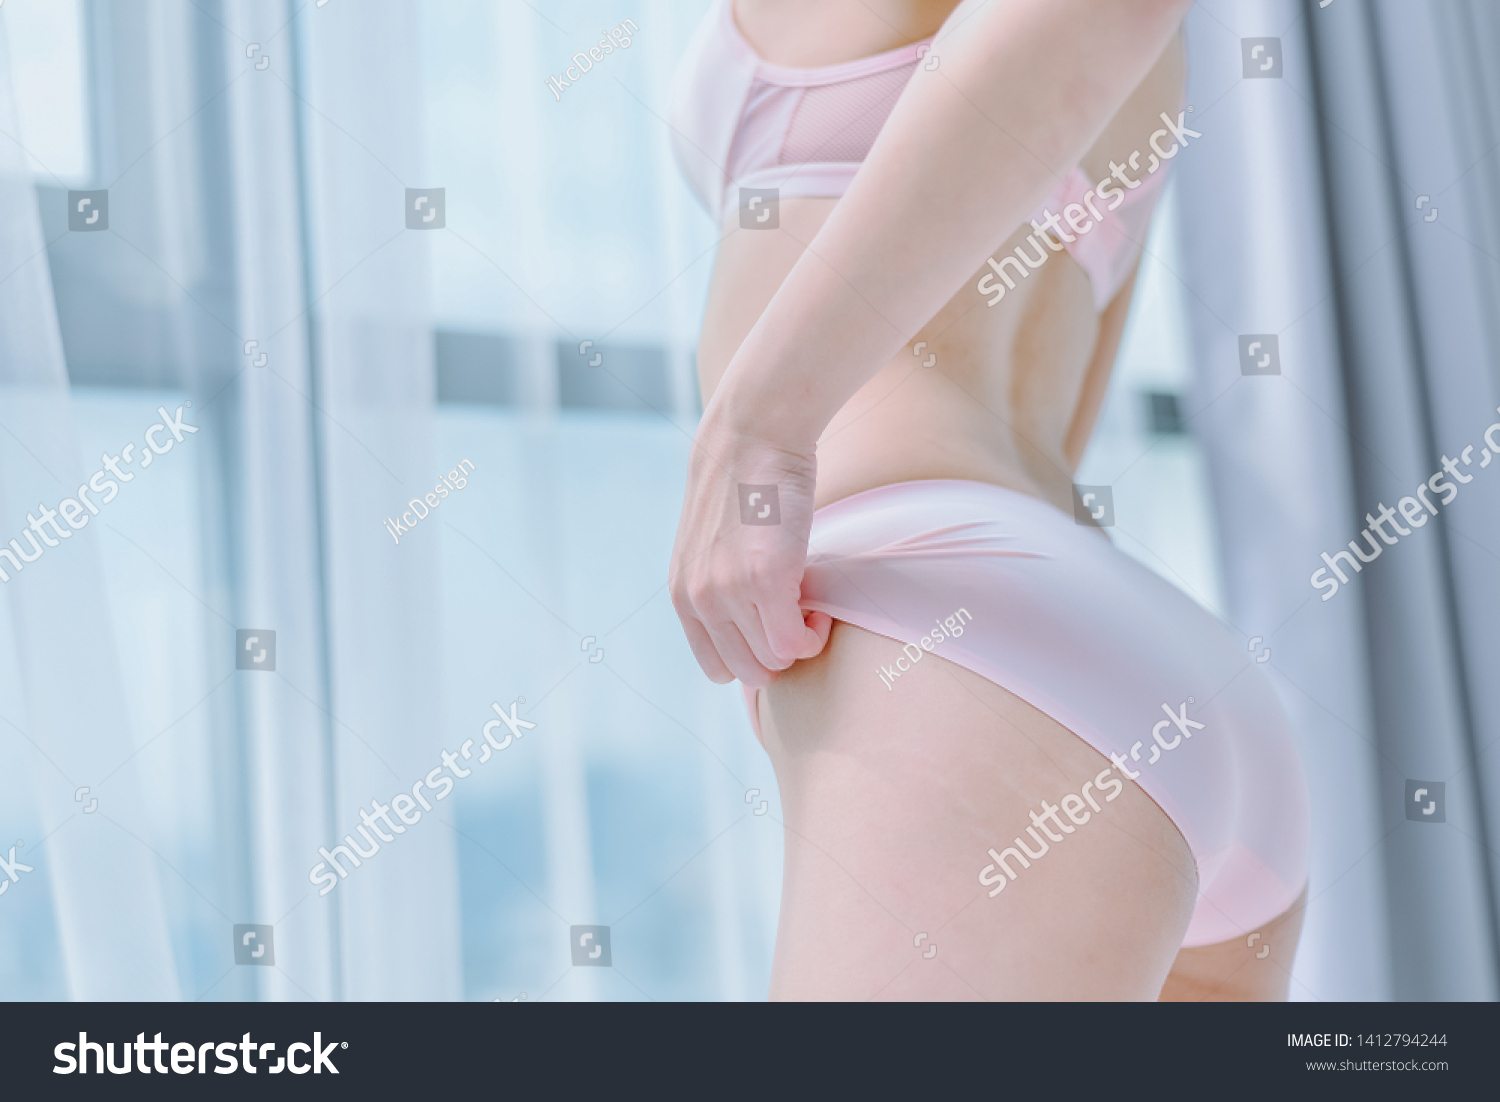 Pantied Ass